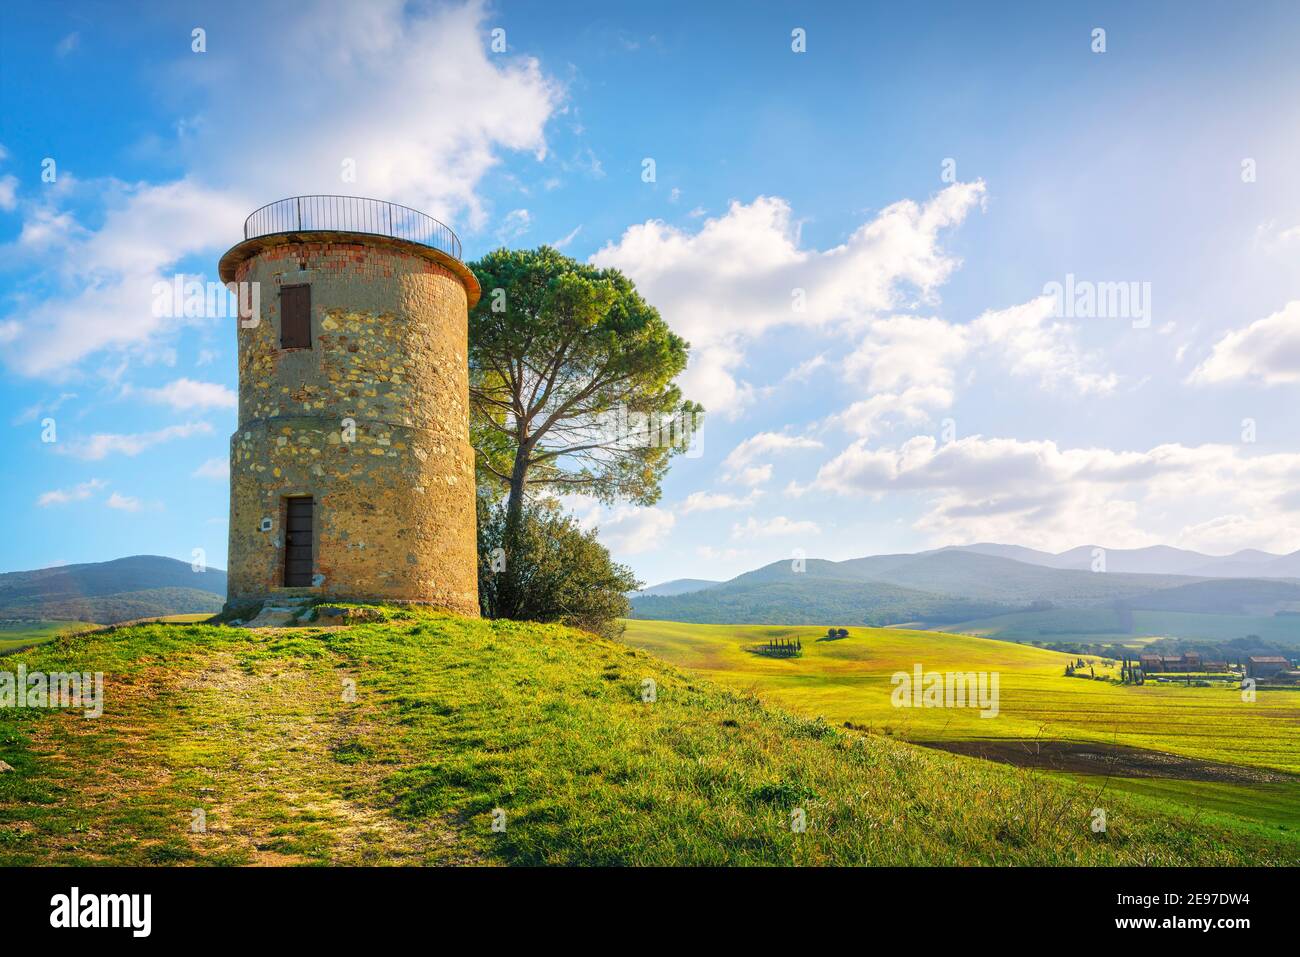 Toscane, paysage de la campagne de la Maremme. Ancien moulin à vent et arbres au sommet de la colline. Bibbona, Livourne, Italie. Banque D'Images